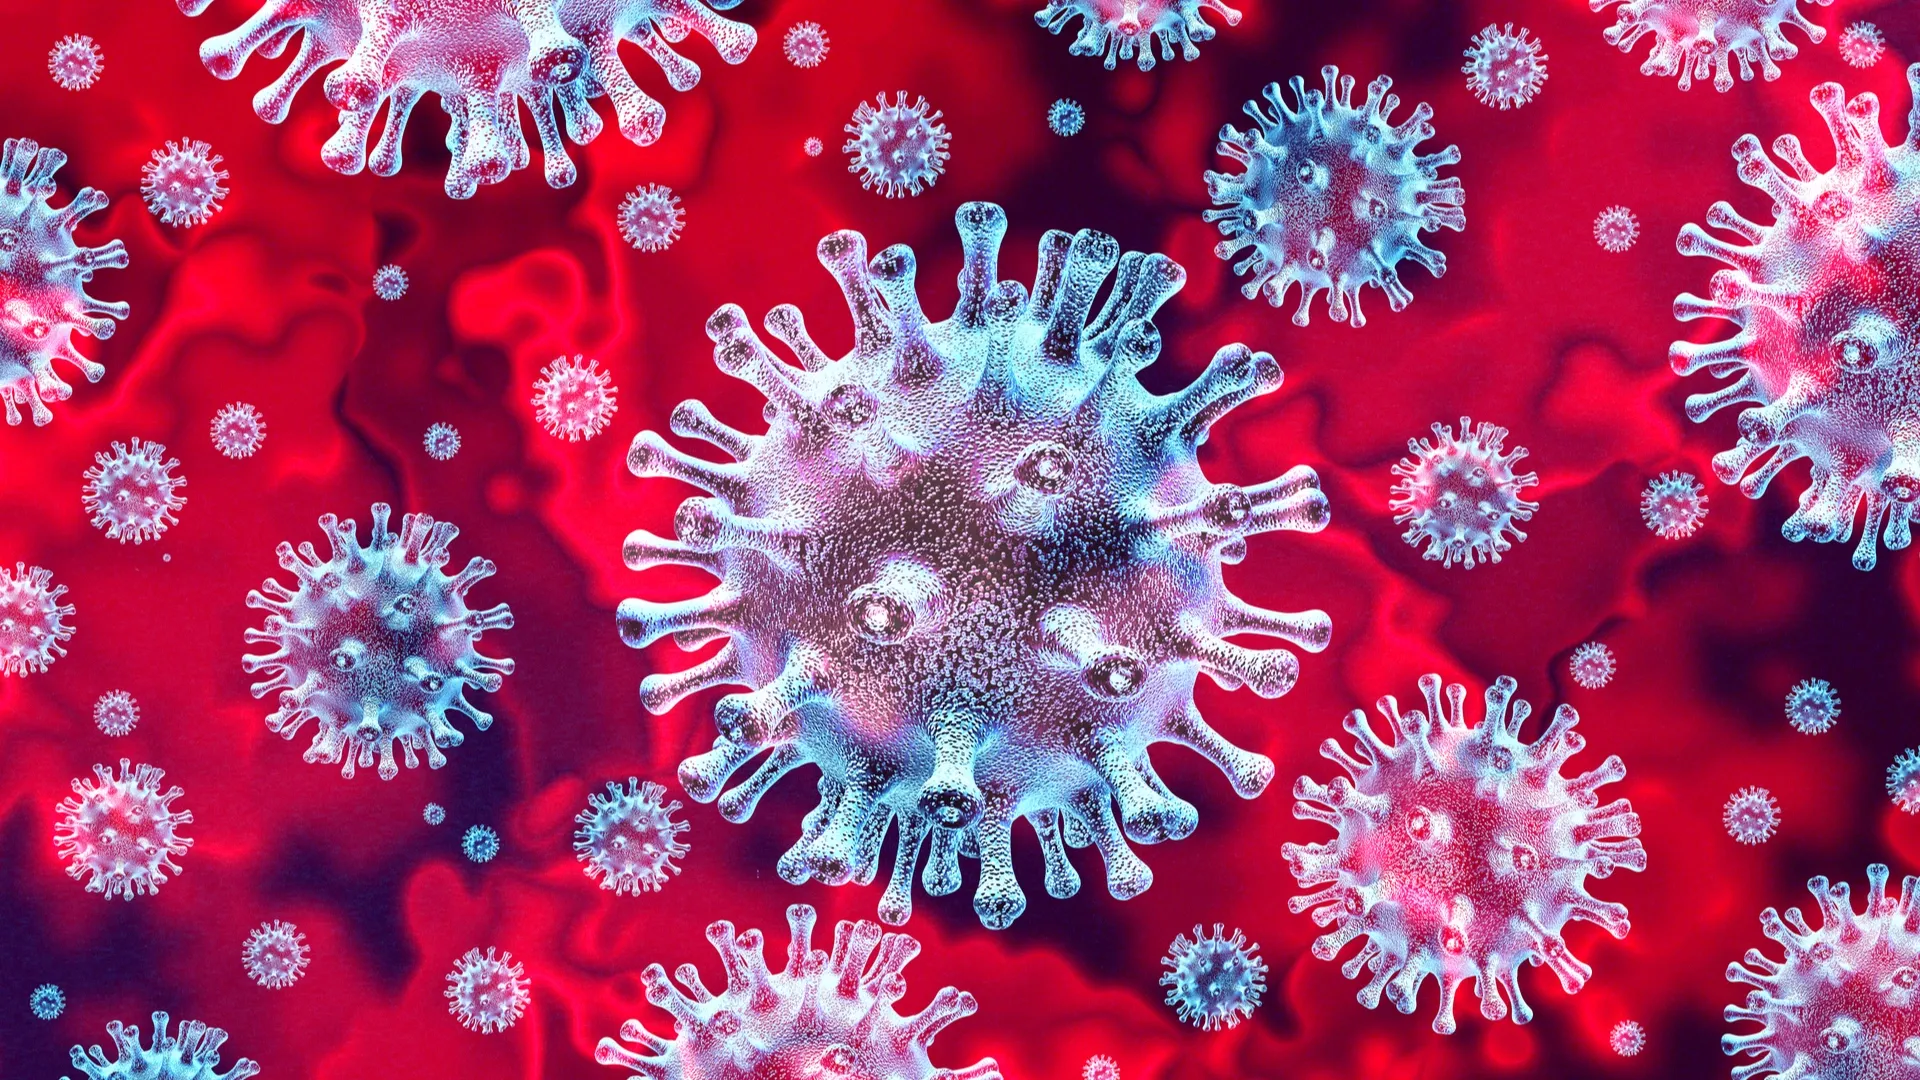 Врачи призывают вакцинироваться для снижения вероятности модификации вируса! Фото: Lightspring / Shutterstock.com